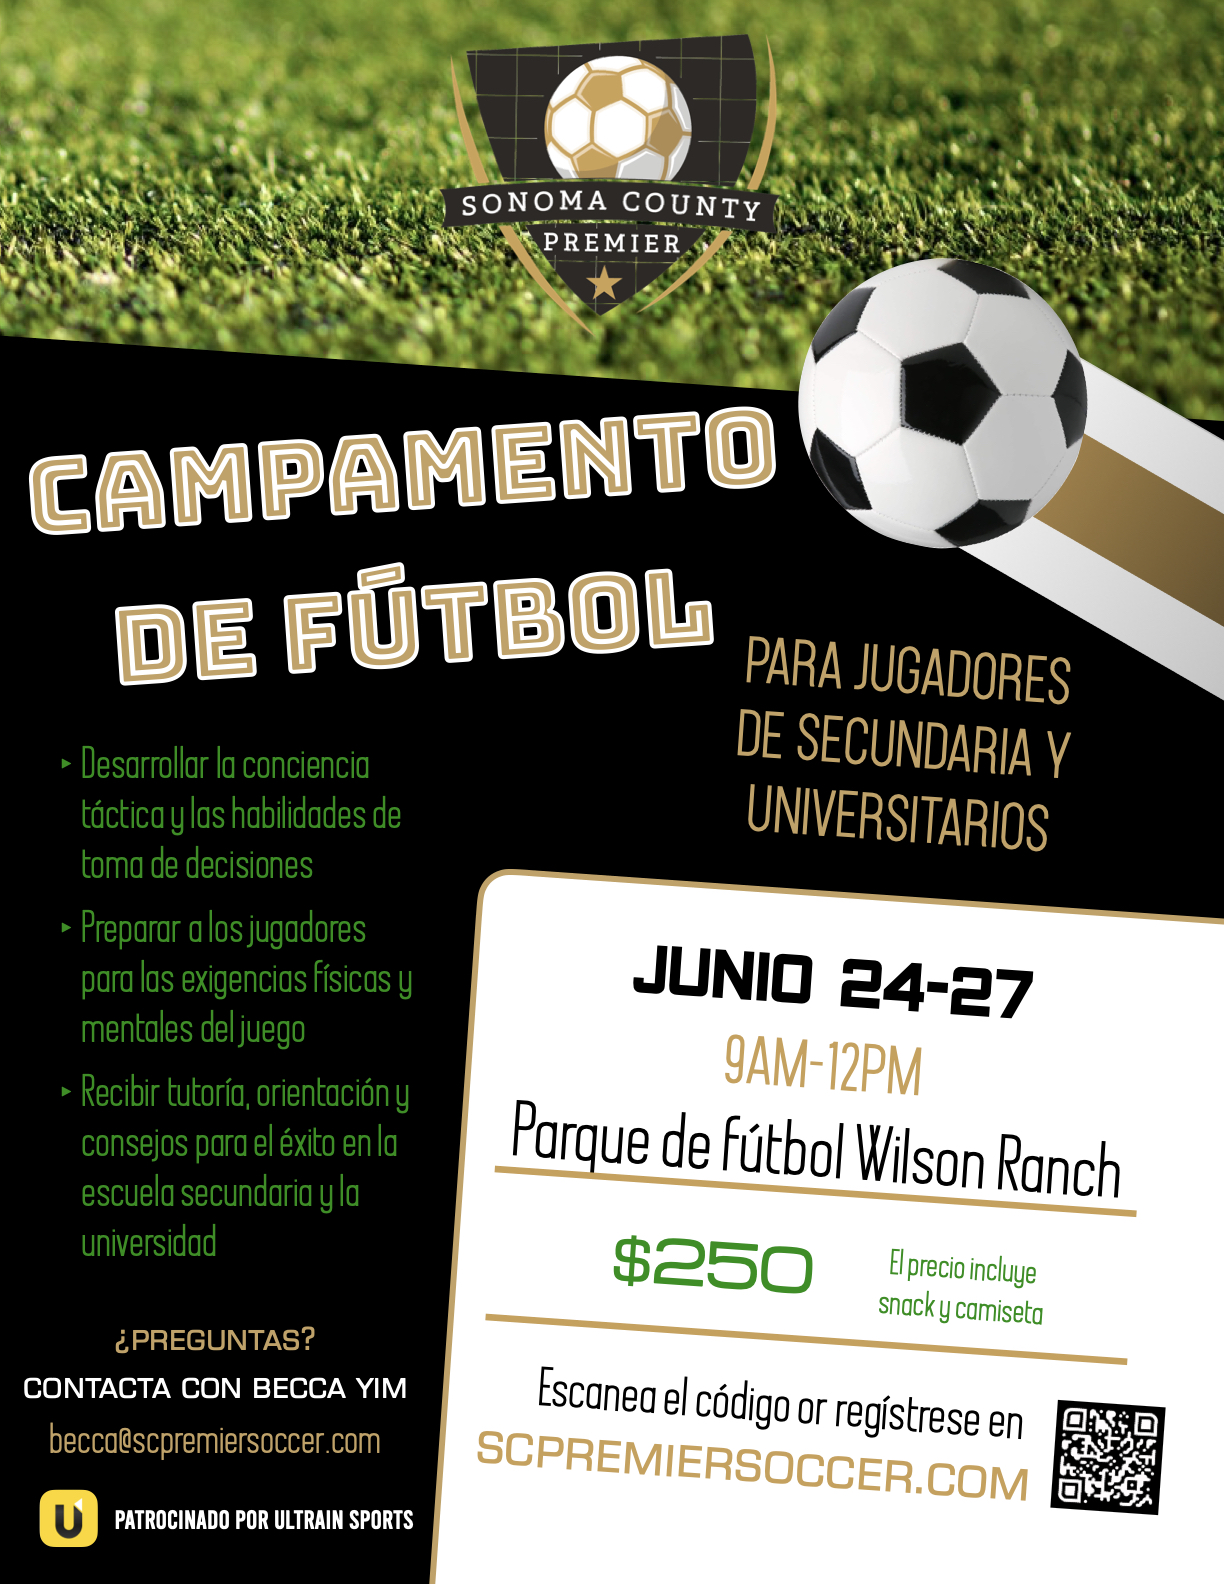 Soccer camp flier HS Spanish.1